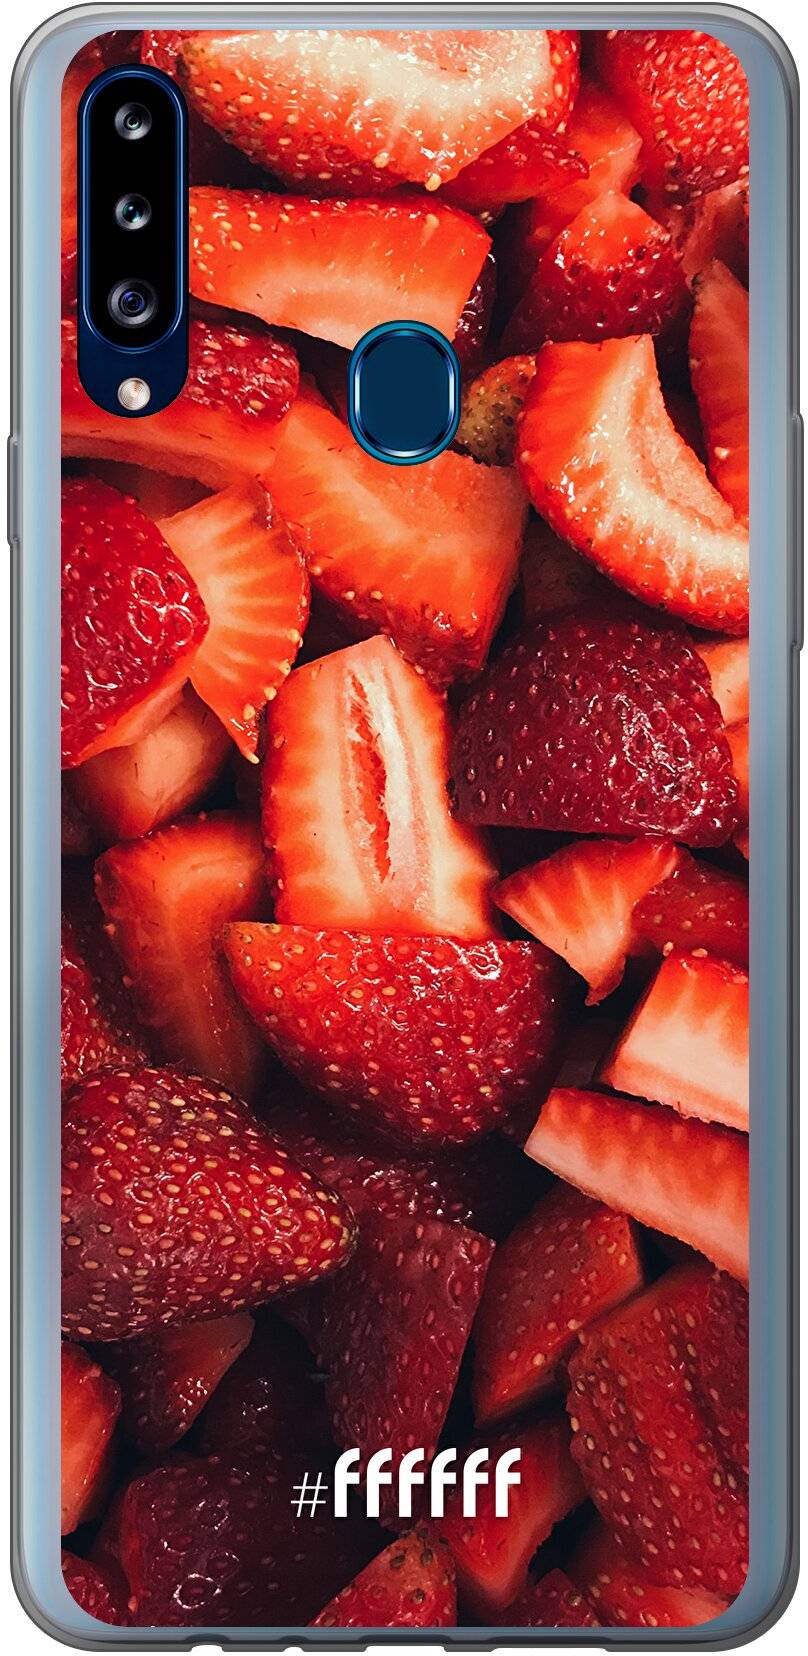 Strawberry Fields Galaxy A20s